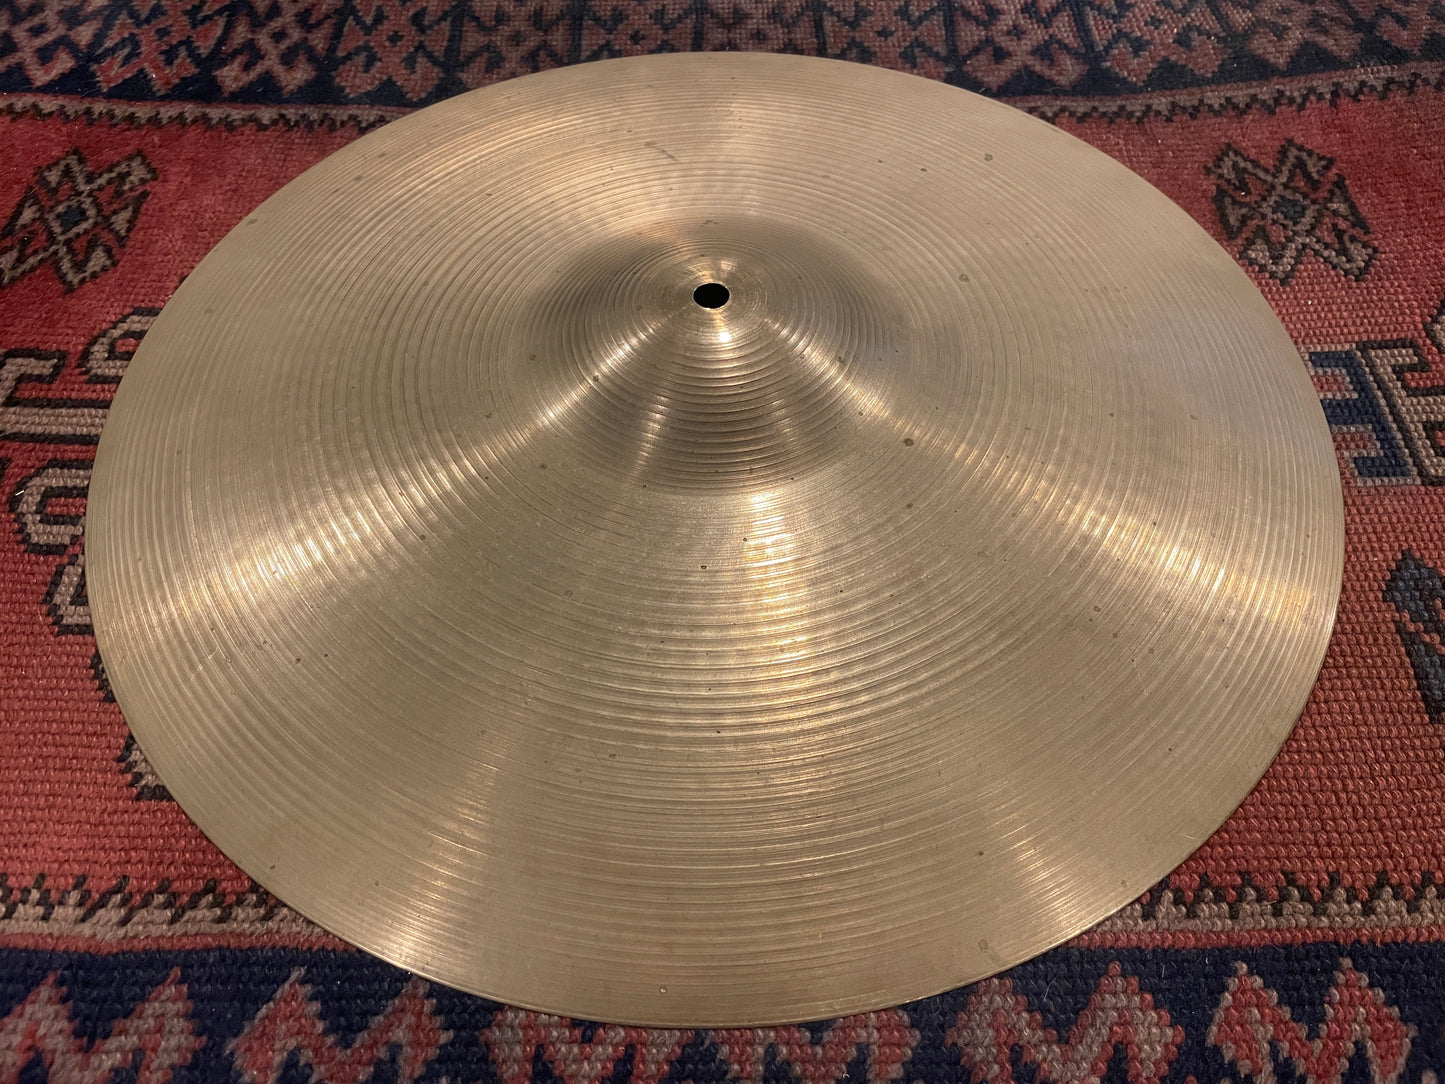 18" Zildjian A 1960s Crash / Ride Cymbal 1432g #703